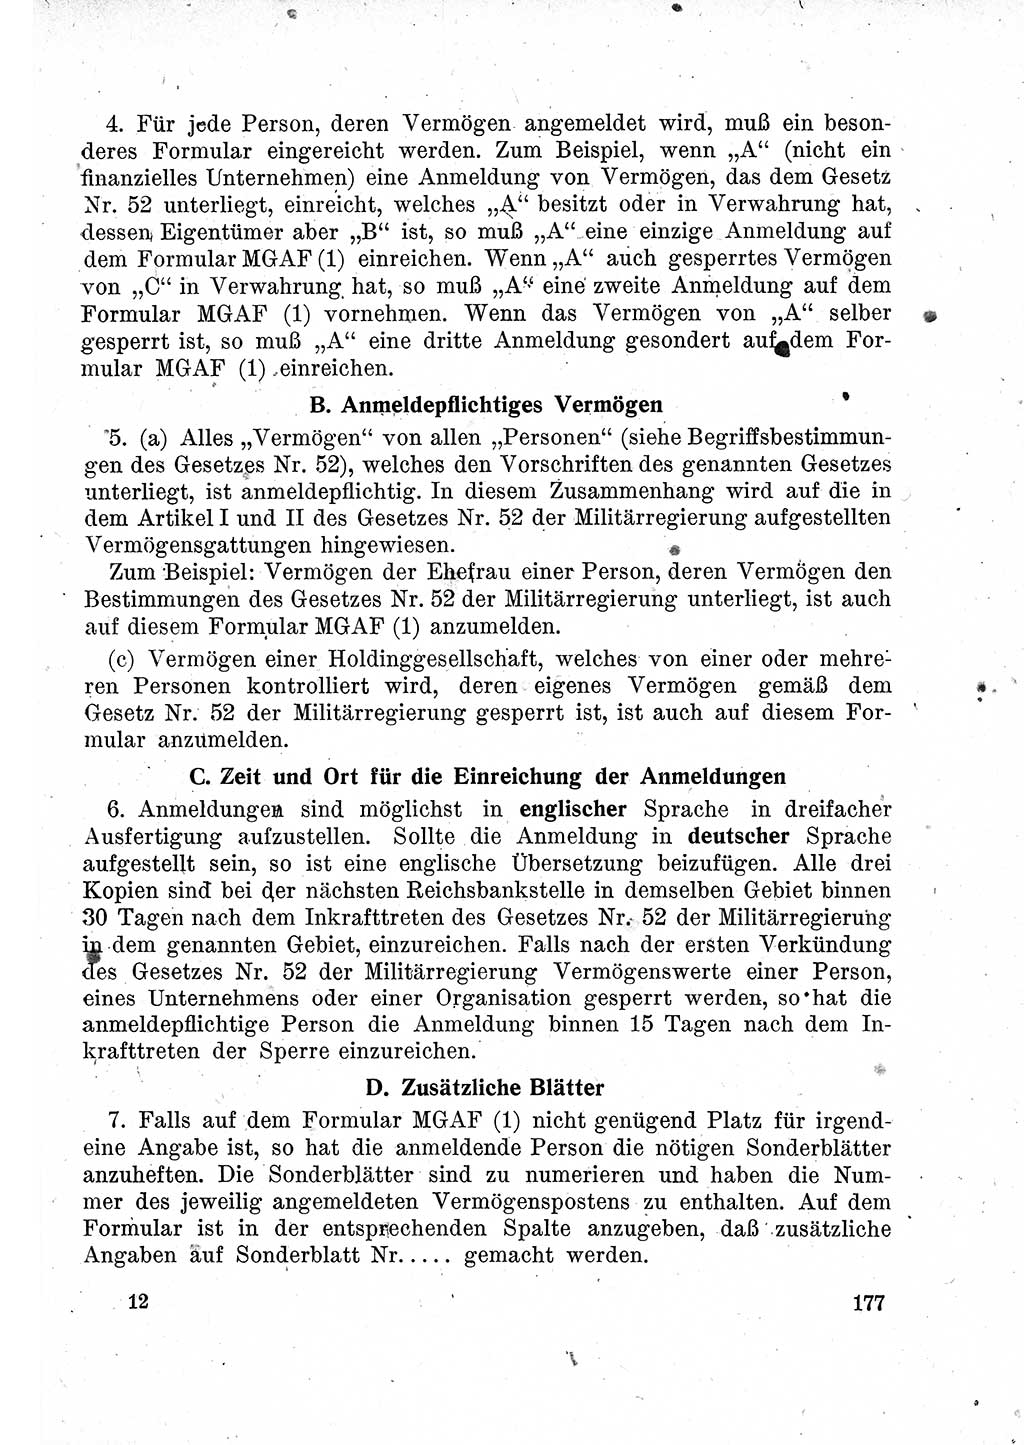 Das Recht der Besatzungsmacht (Deutschland), Proklamationen, Deklerationen, Verordnungen, Gesetze und Bekanntmachungen 1947, Seite 177 (R. Bes. Dtl. 1947, S. 177)